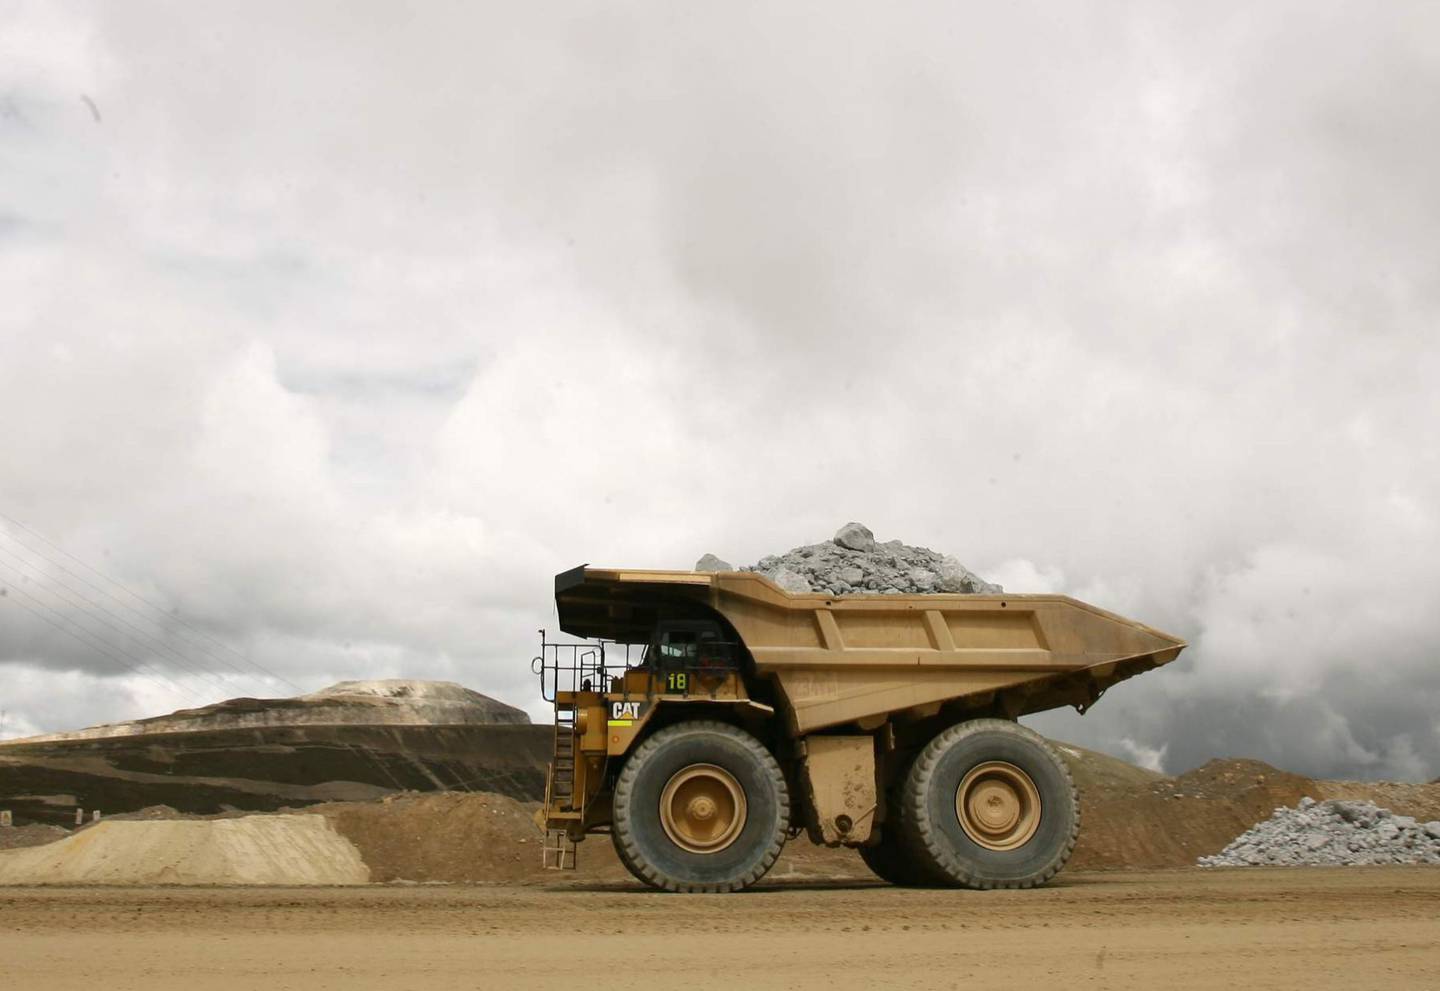 Australia y Canadá atraen más recursos de inversión en minería, de acuerdo a Gonzalo Tamayo, socio de Macroconsult y el IIMP. Mientras tanto, la posición de países latinoamericanos como Perú decae.